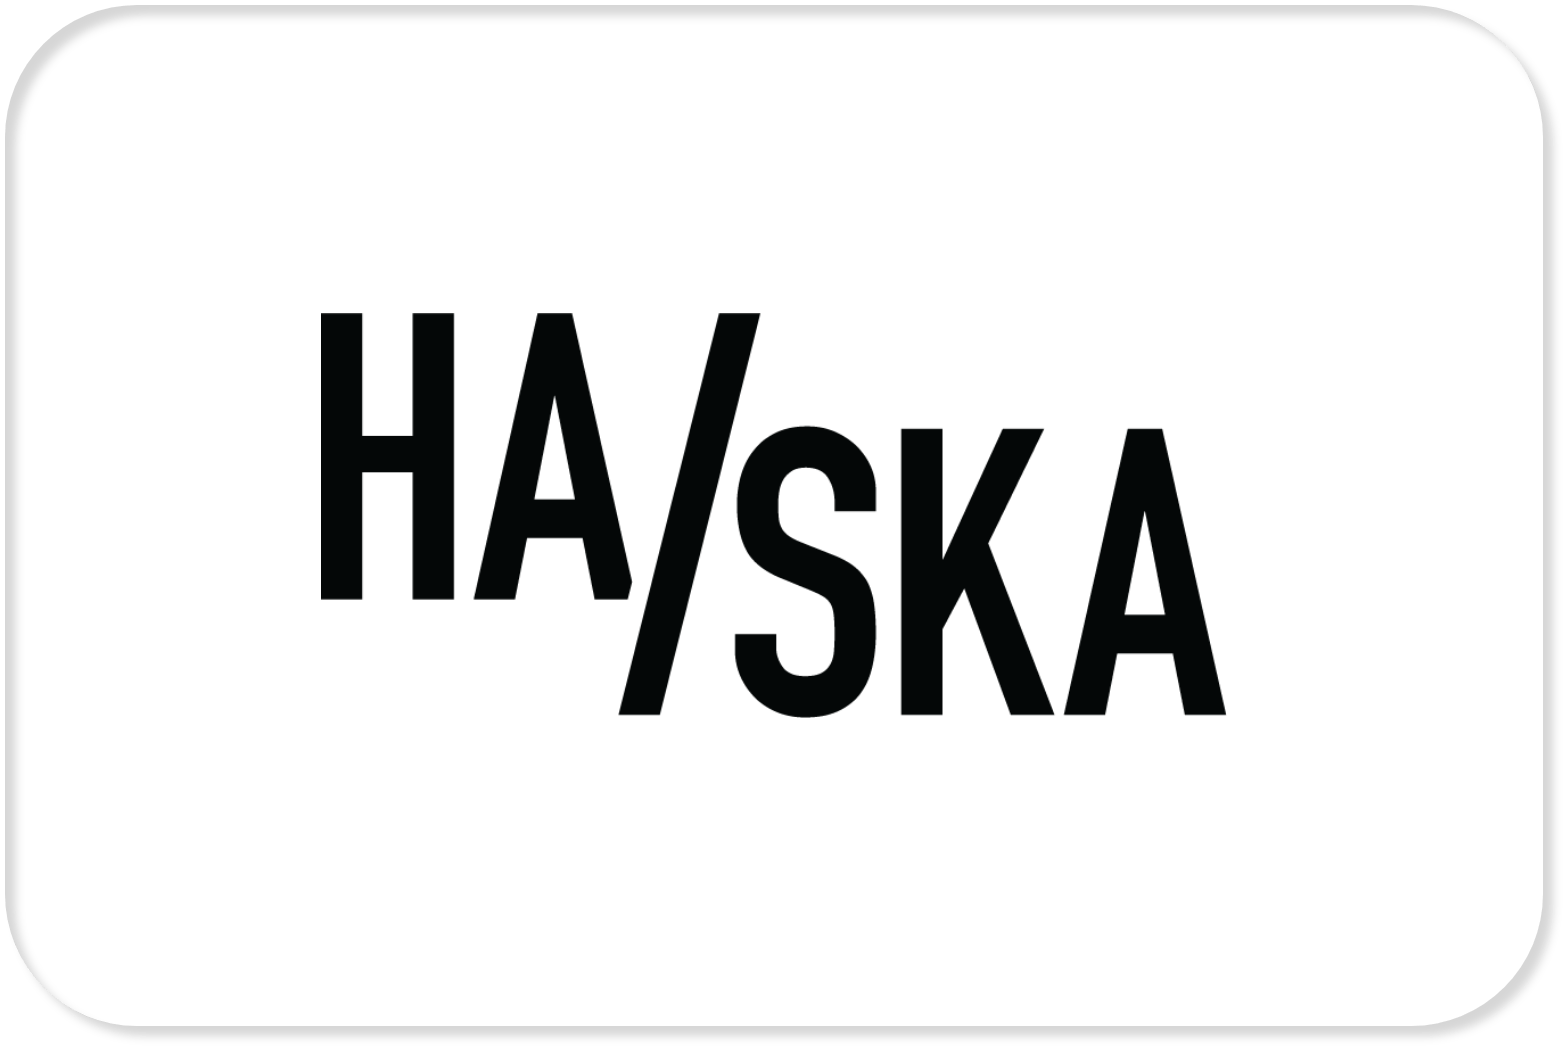 Halska